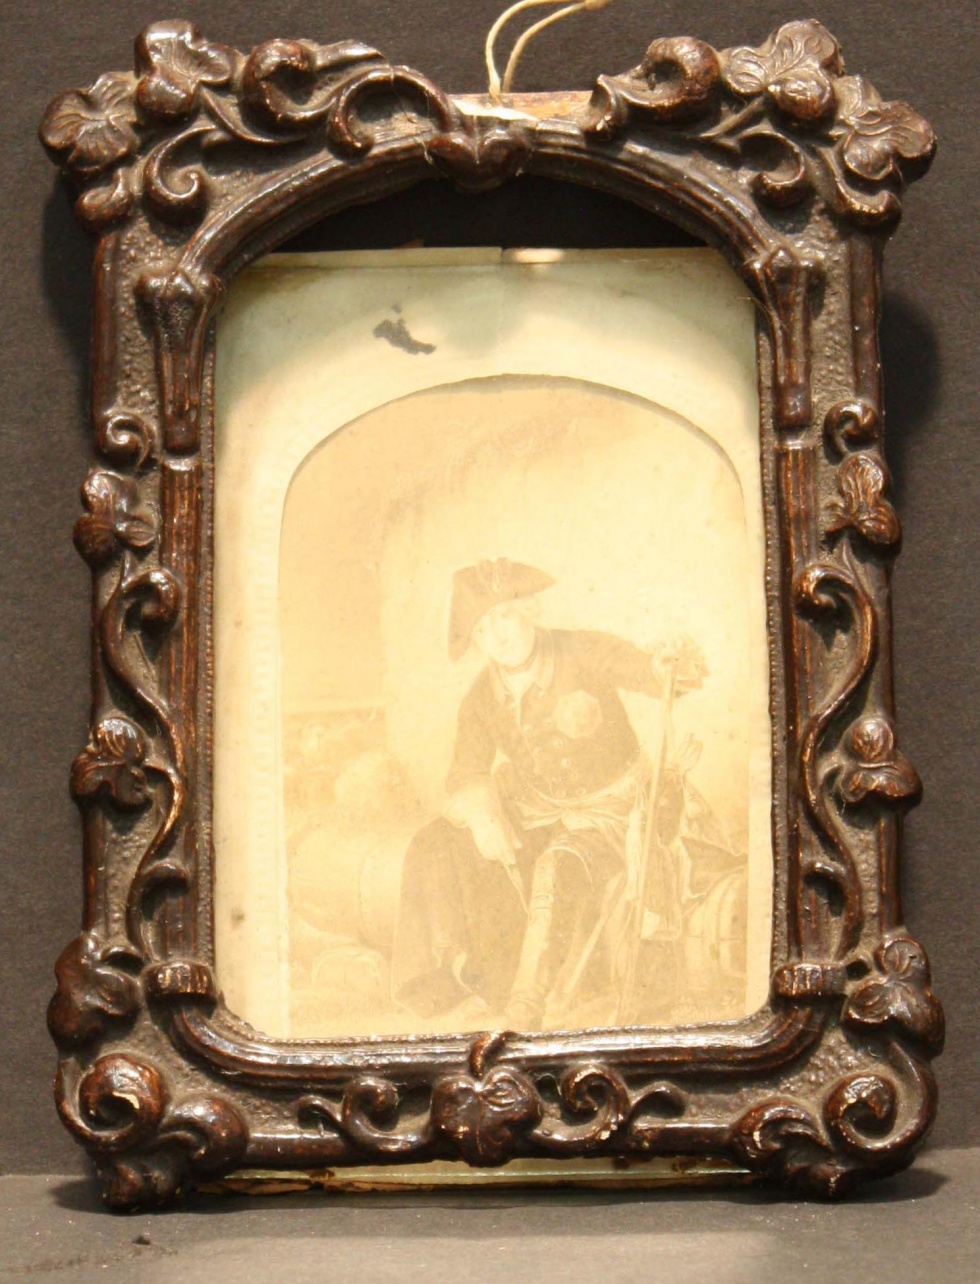 Fotografie, gerahmt, Friedrich II. (Museum Wolmirstedt RR-F)